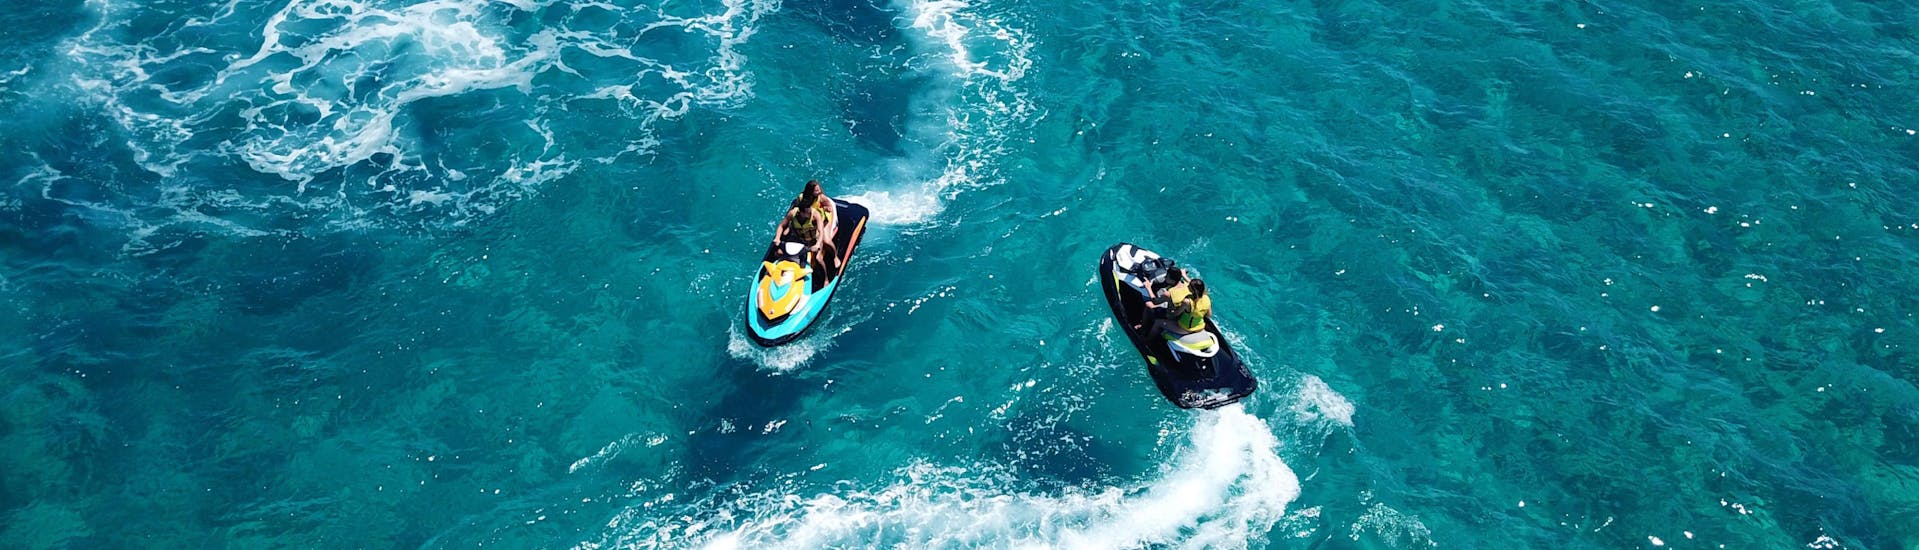 Eine Freundesgruppe beim Banana Boot fahren in der Urlaubsregion Perissa.